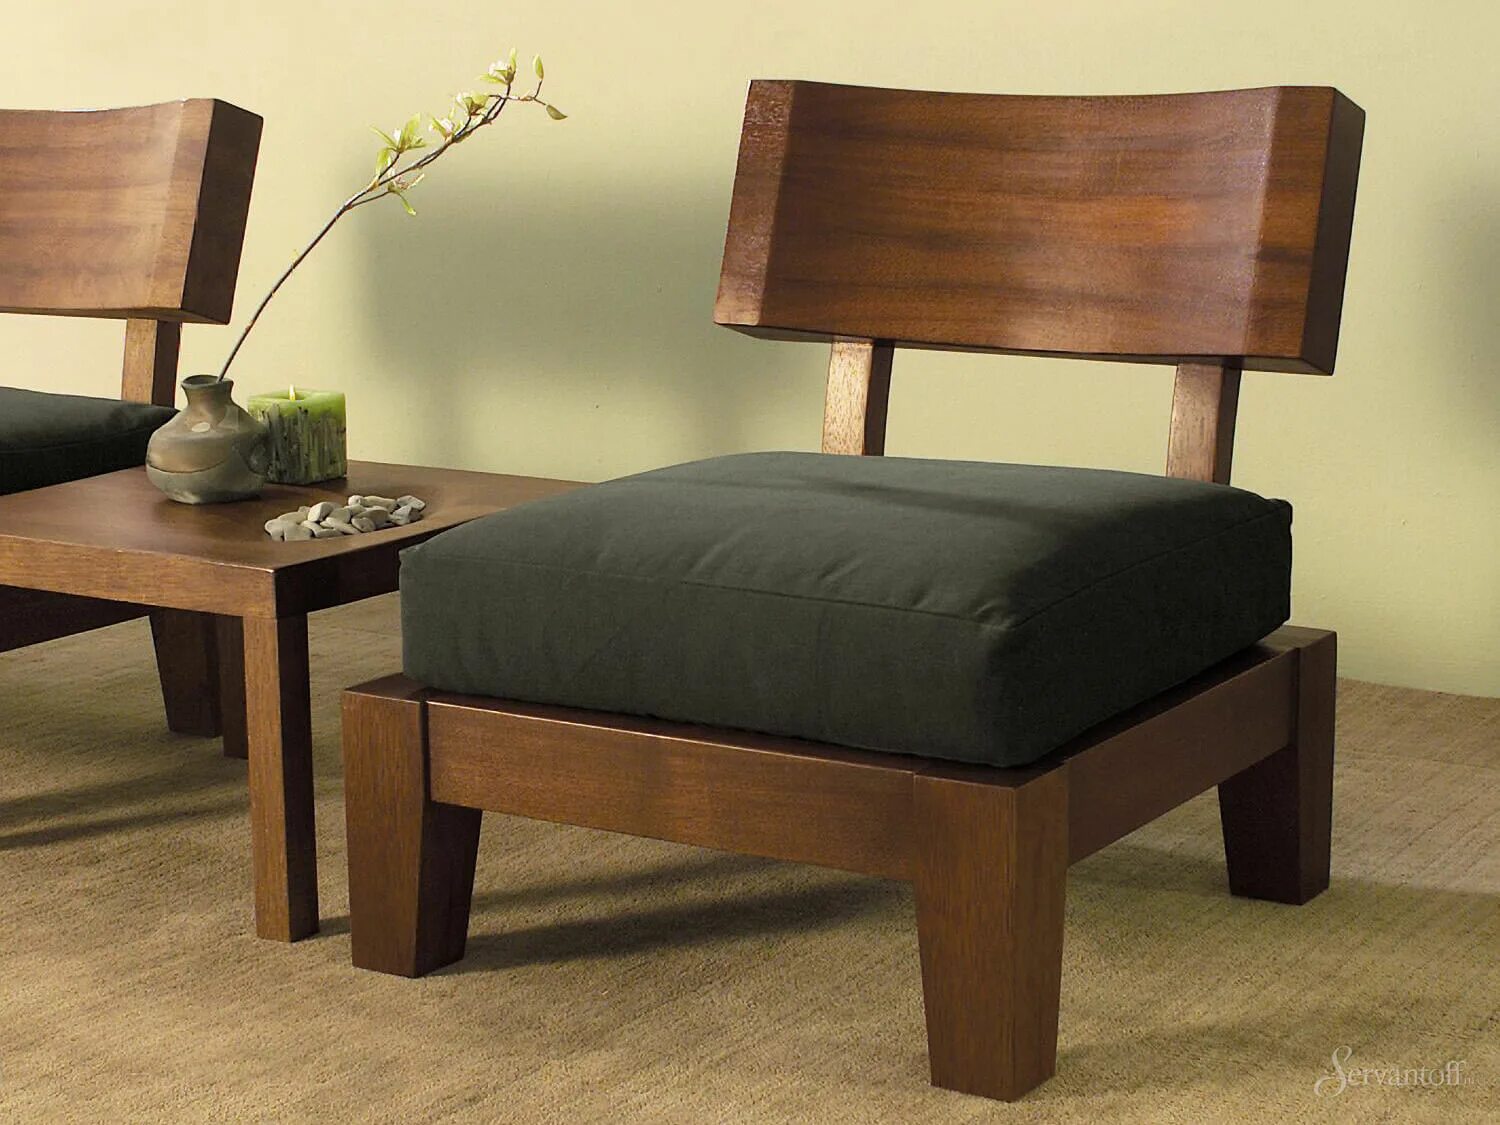 Wooden мебель. Кресло Japanese Style Armchair. Современная деревянная мебель. Деревянная мебель в интерьере. Кресло в эко стиле.